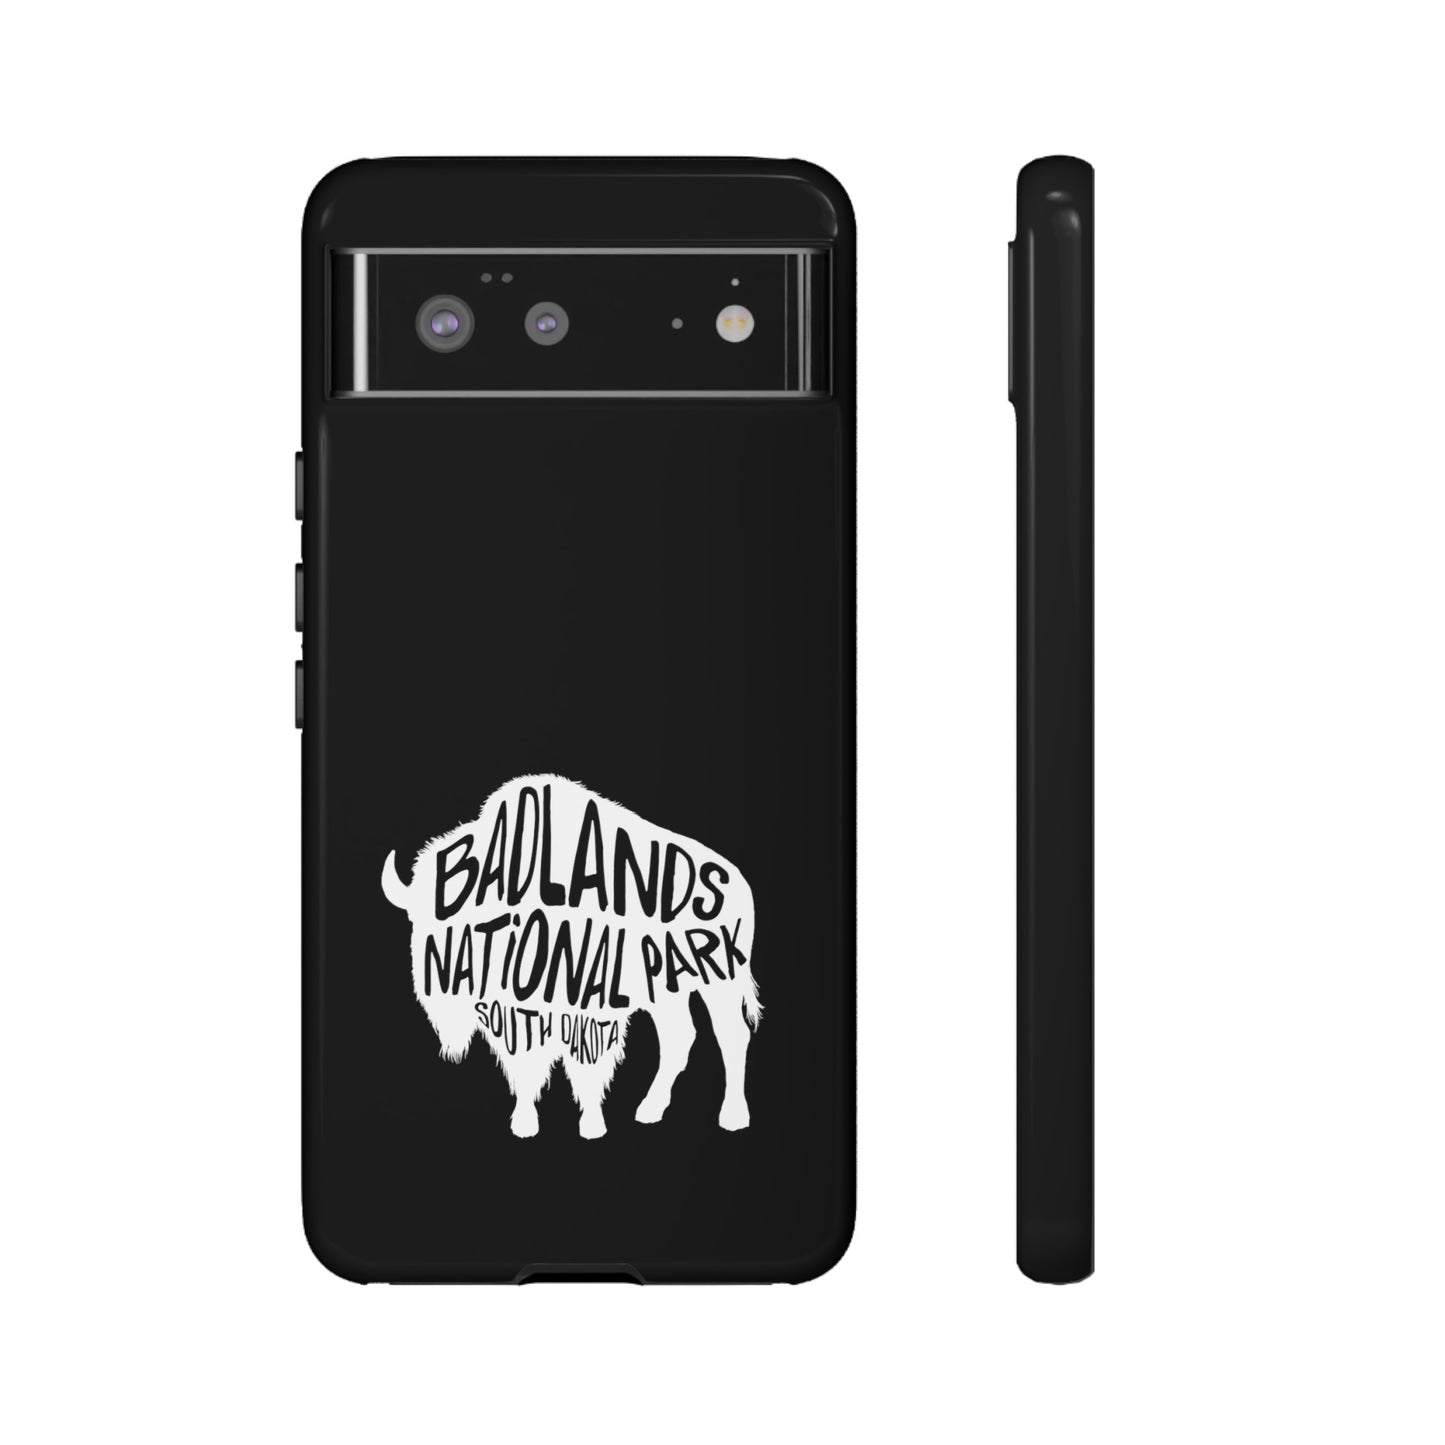 Badlands National Park Phone Case - Bison Design